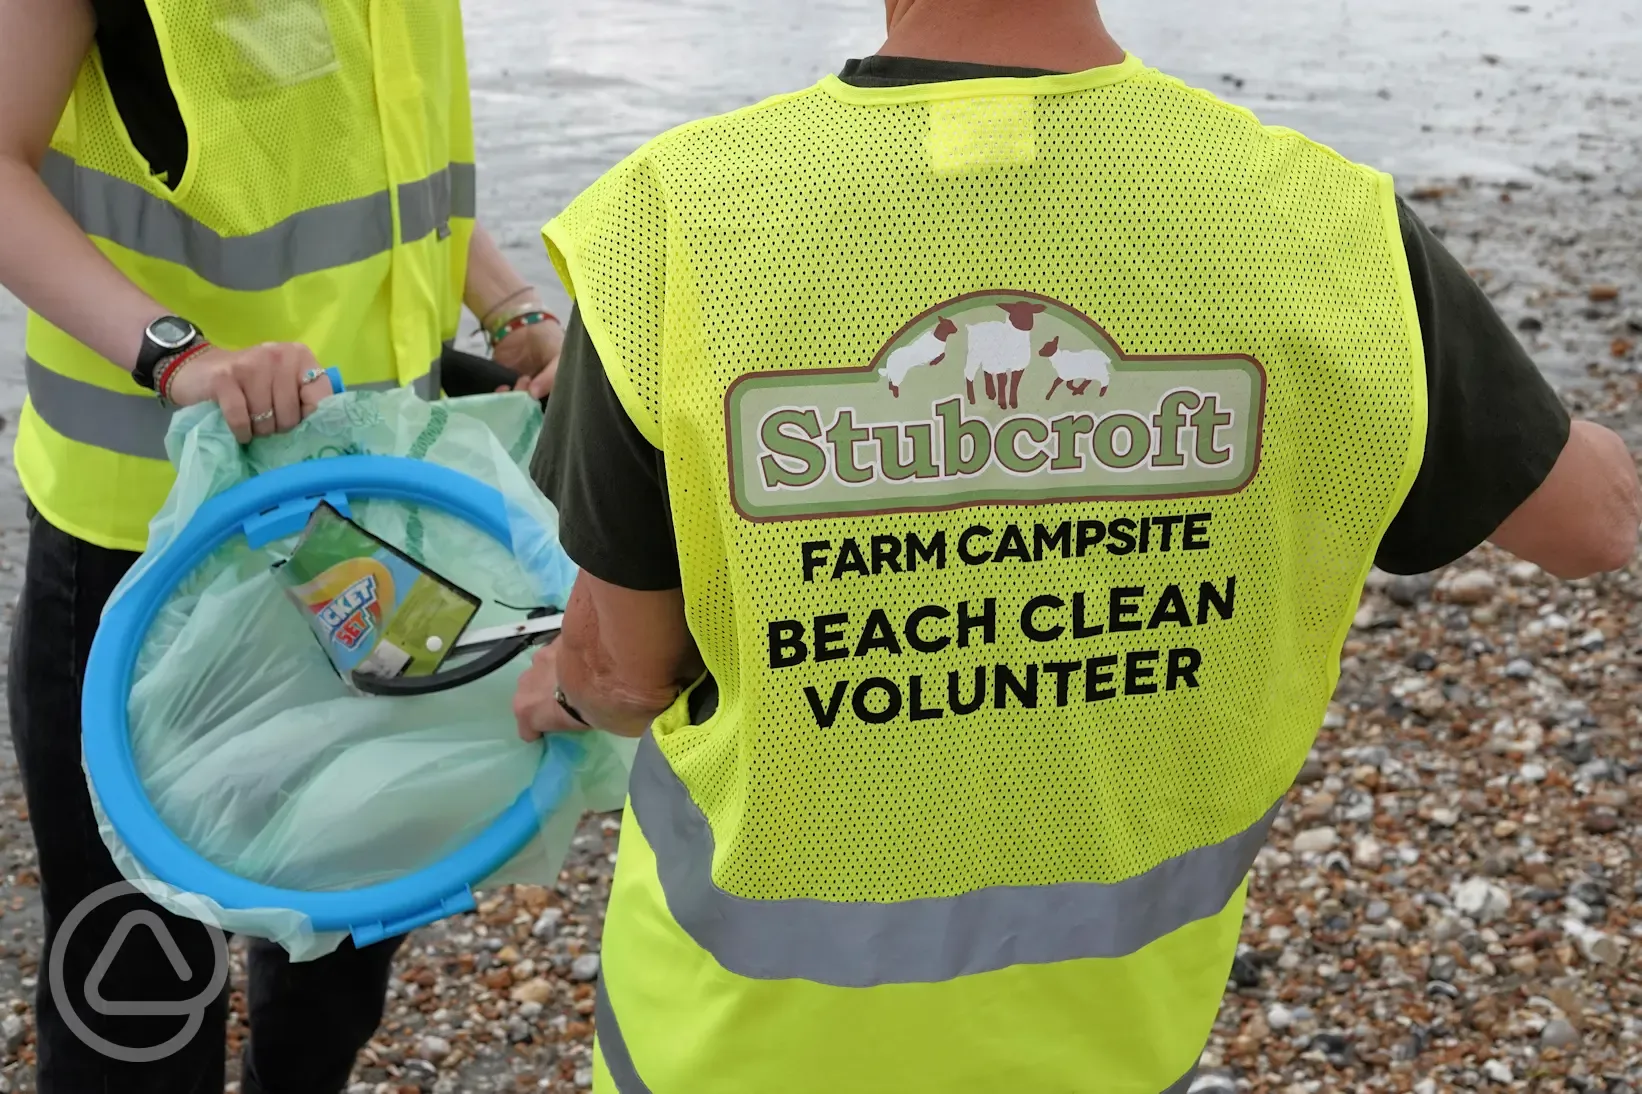 Stubcroft Beach Clean volunteers